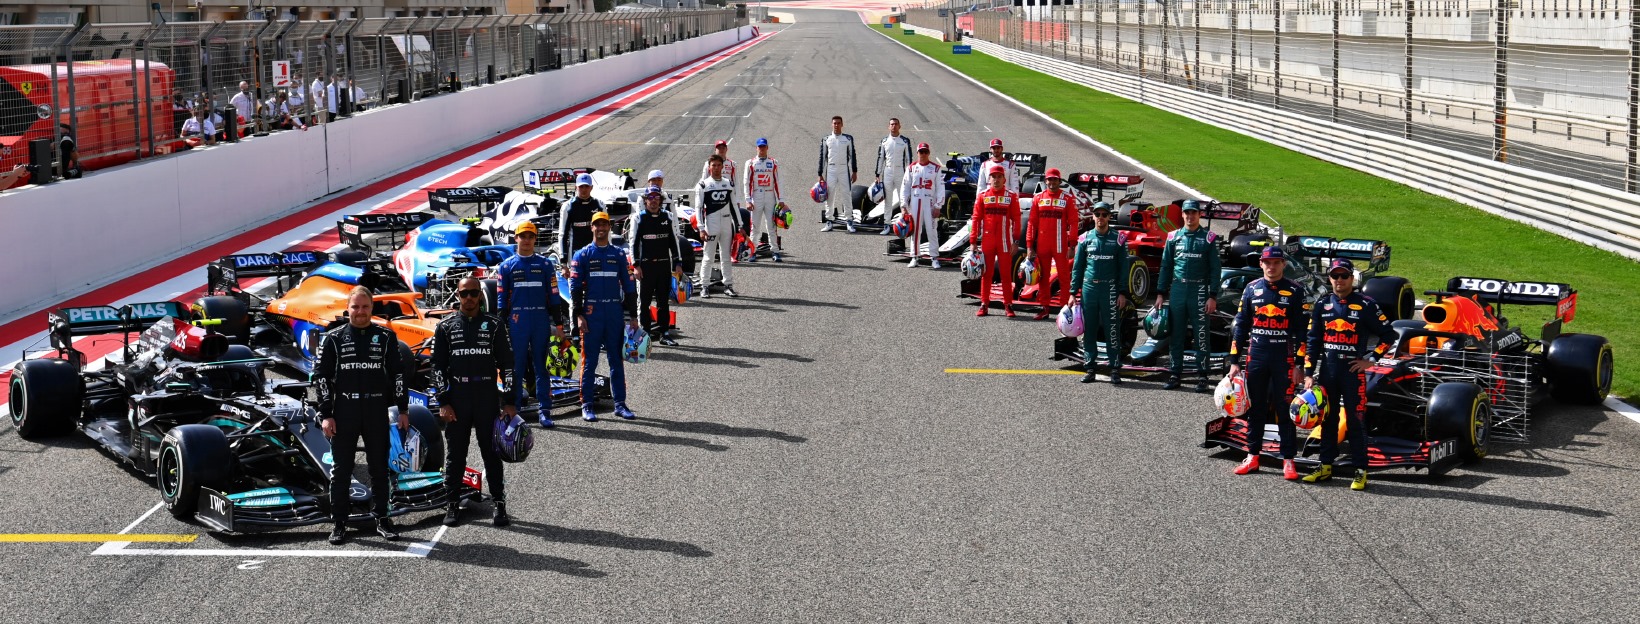 Pilotos da temporada 2021 de F1 no primeiro dia de testes, em Sakhir.